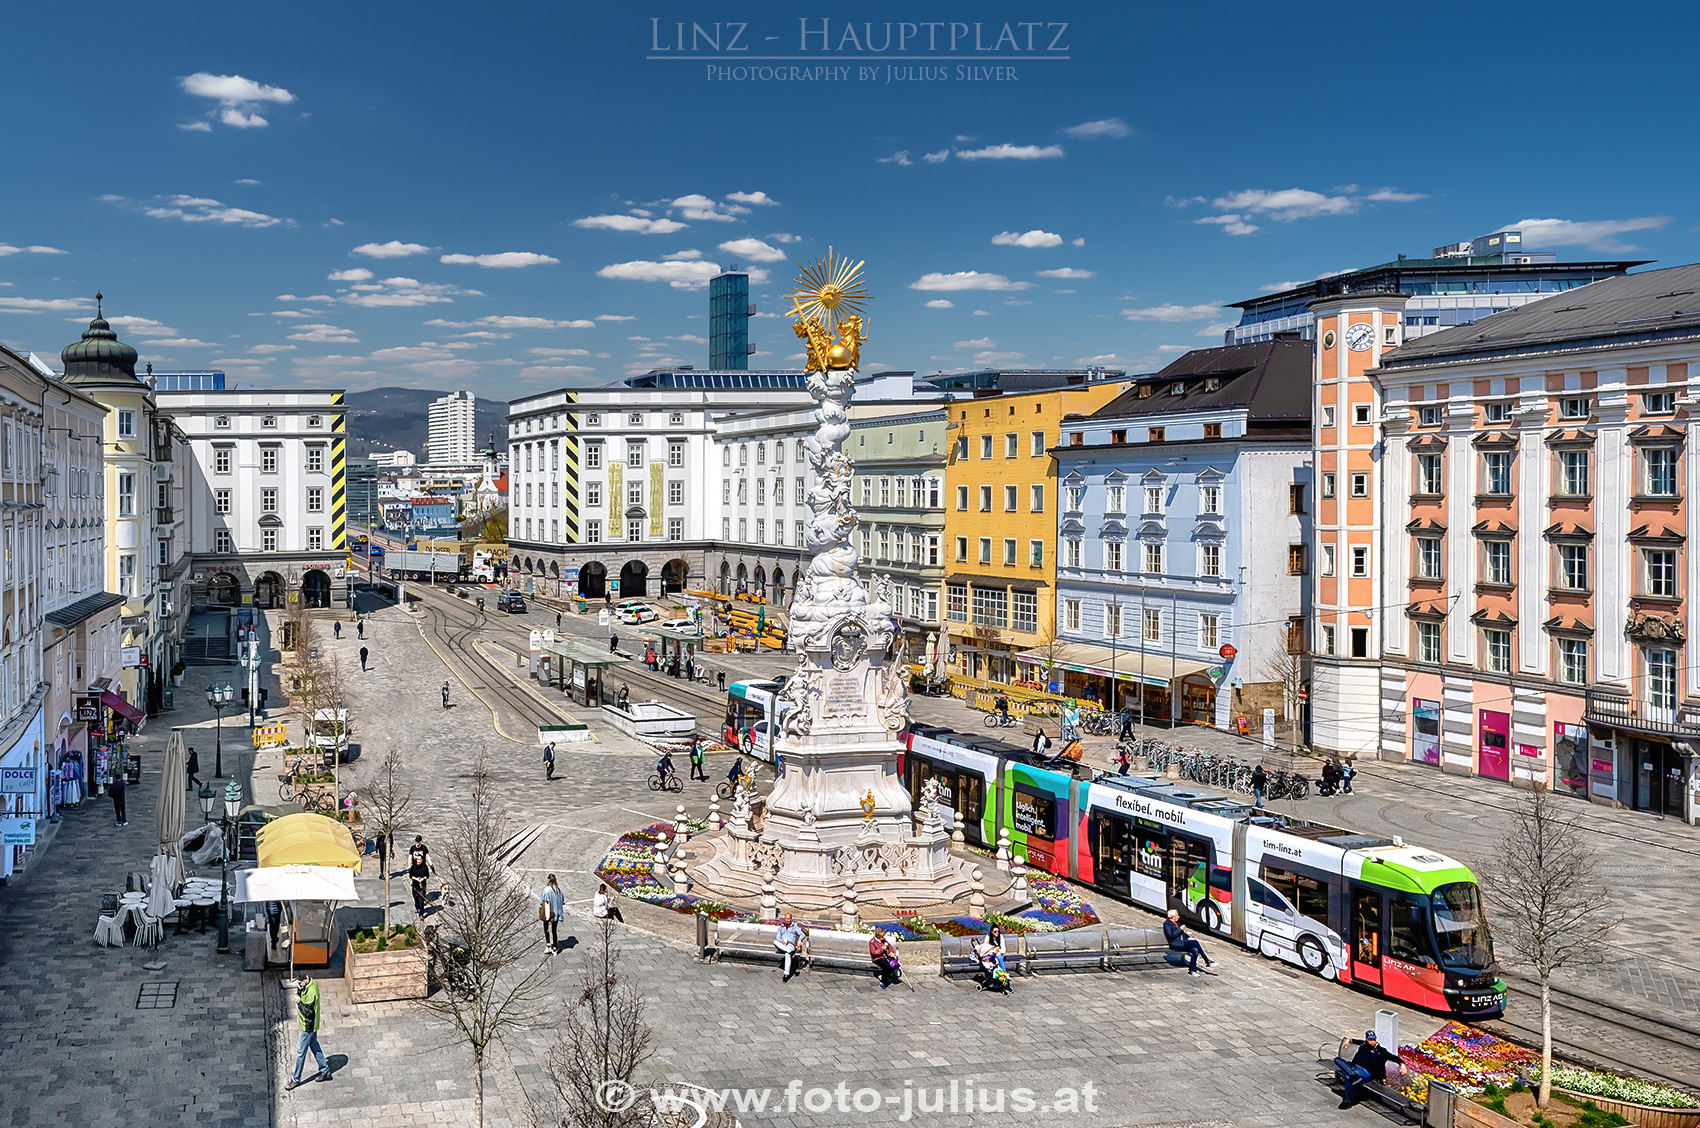 Linz_204a_Hauptplatz.jpg, 1,0MB